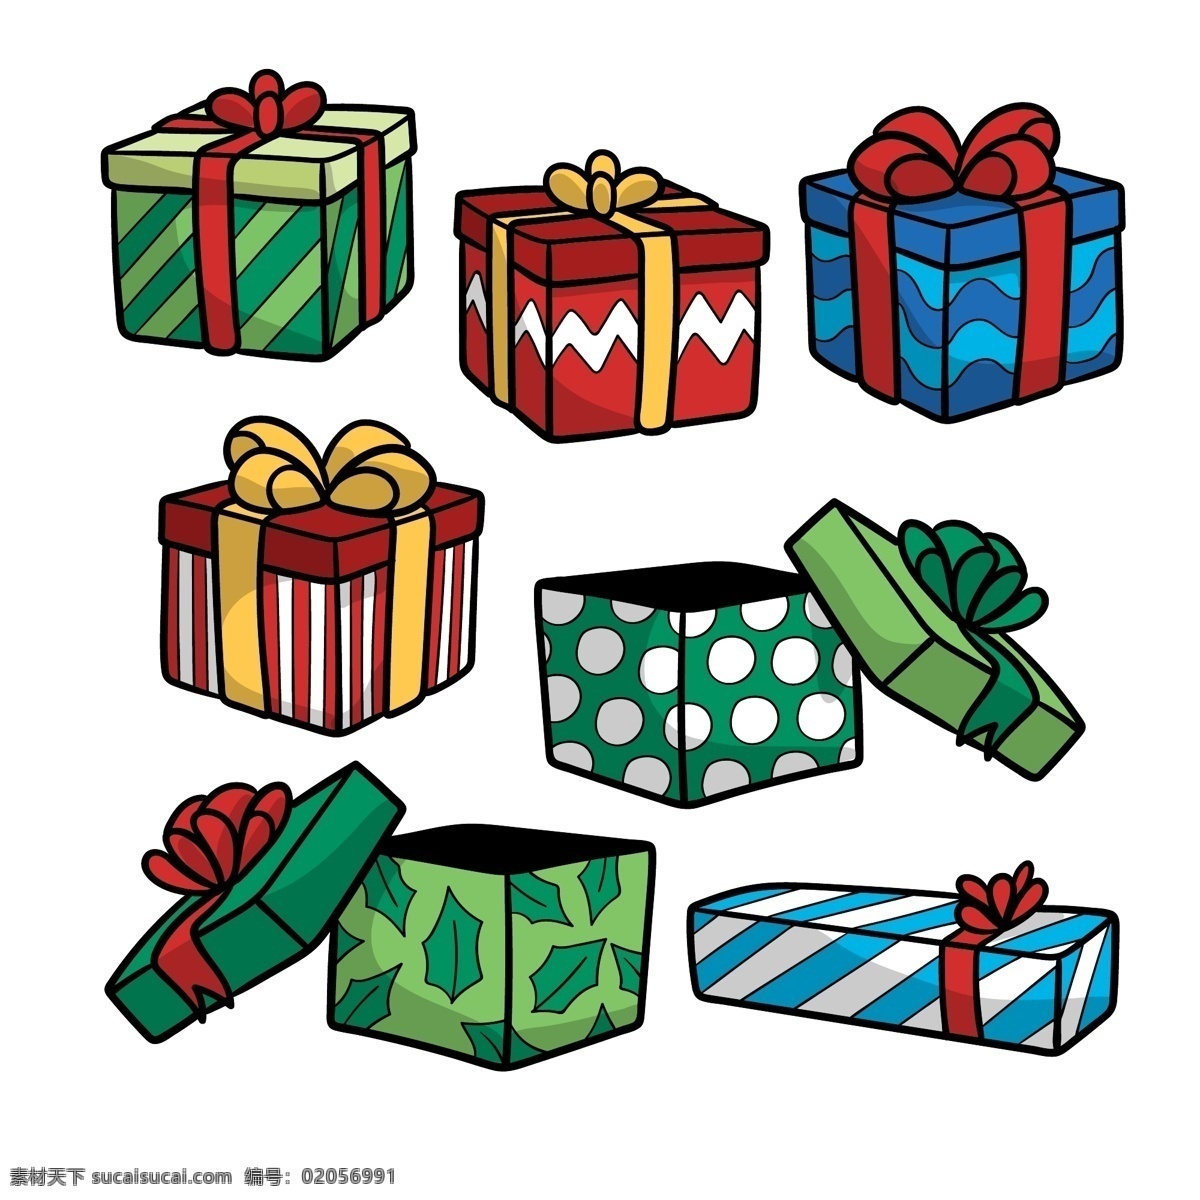 可爱 儿童 圣诞 礼物 盒子 元素 卡通礼盒 礼品包装 礼盒 蝴蝶结 丝带 盒子圣诞礼物 礼品盒 手绘礼盒 节日礼盒 礼品礼盒 卡通素材 圣诞节